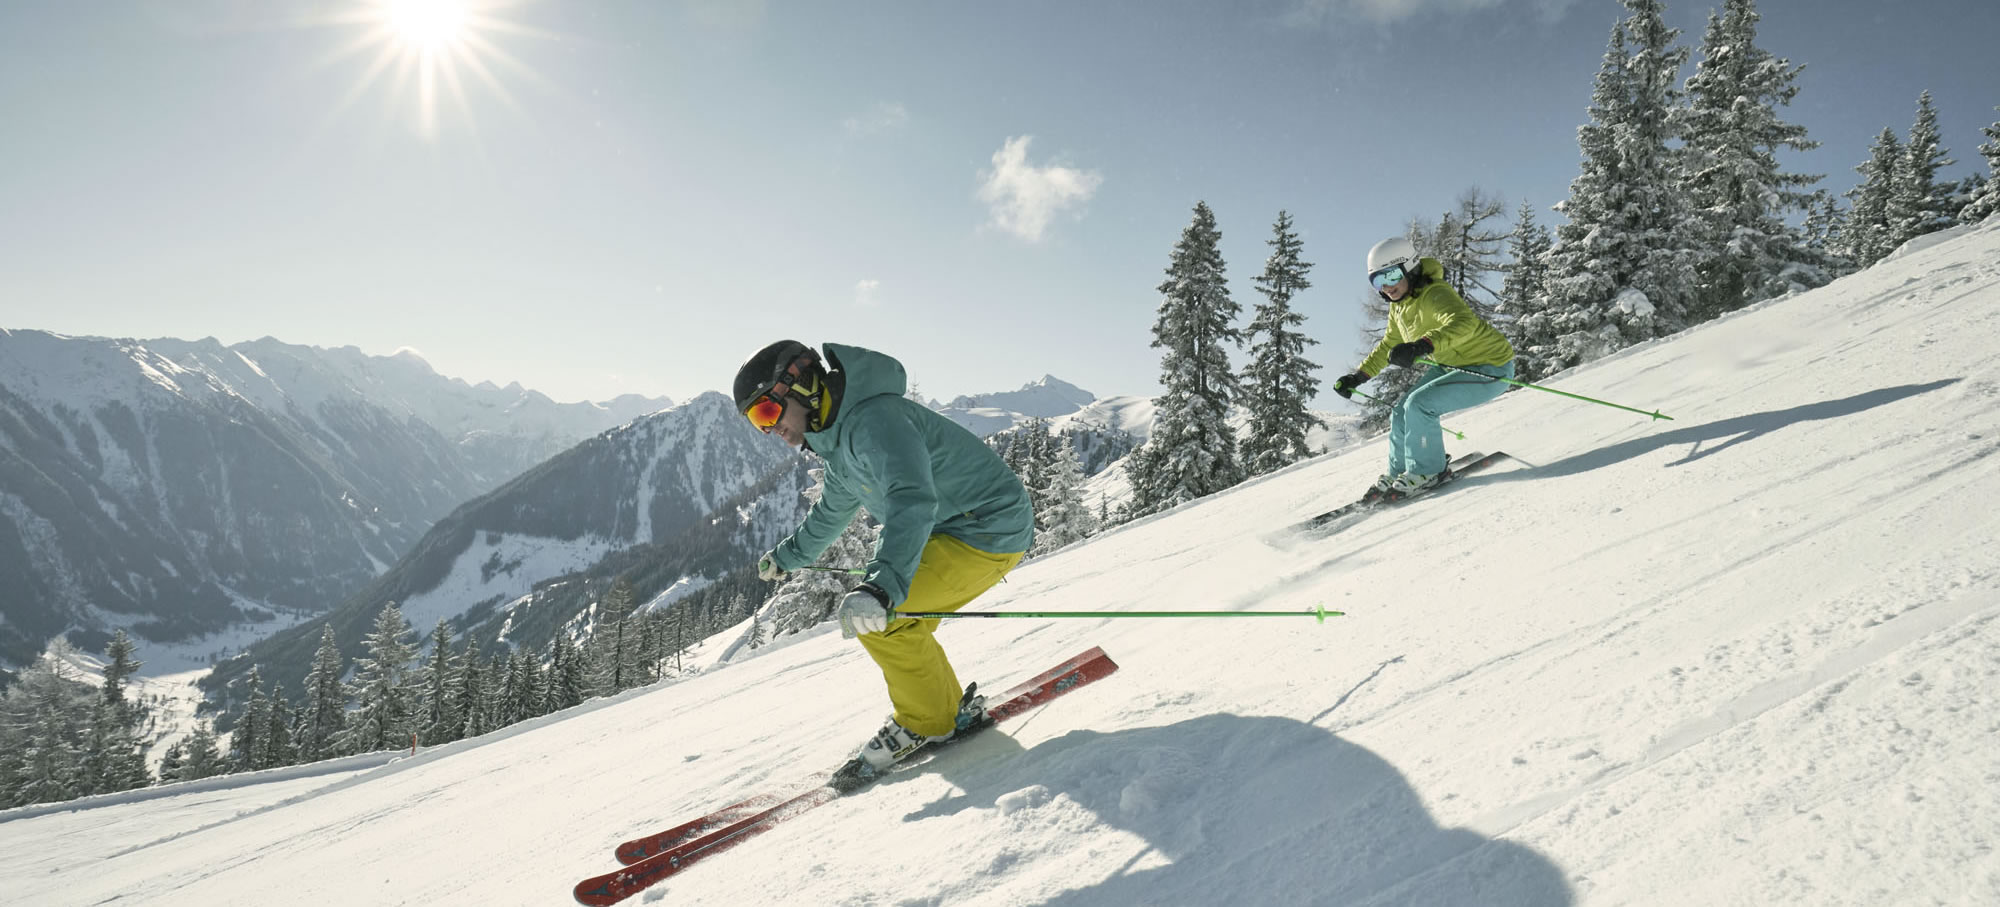 Skiurlaub in Ski amadé, 4-Berge-Skischaukel  © Peter Burgstaller, Schladming-Dachstein